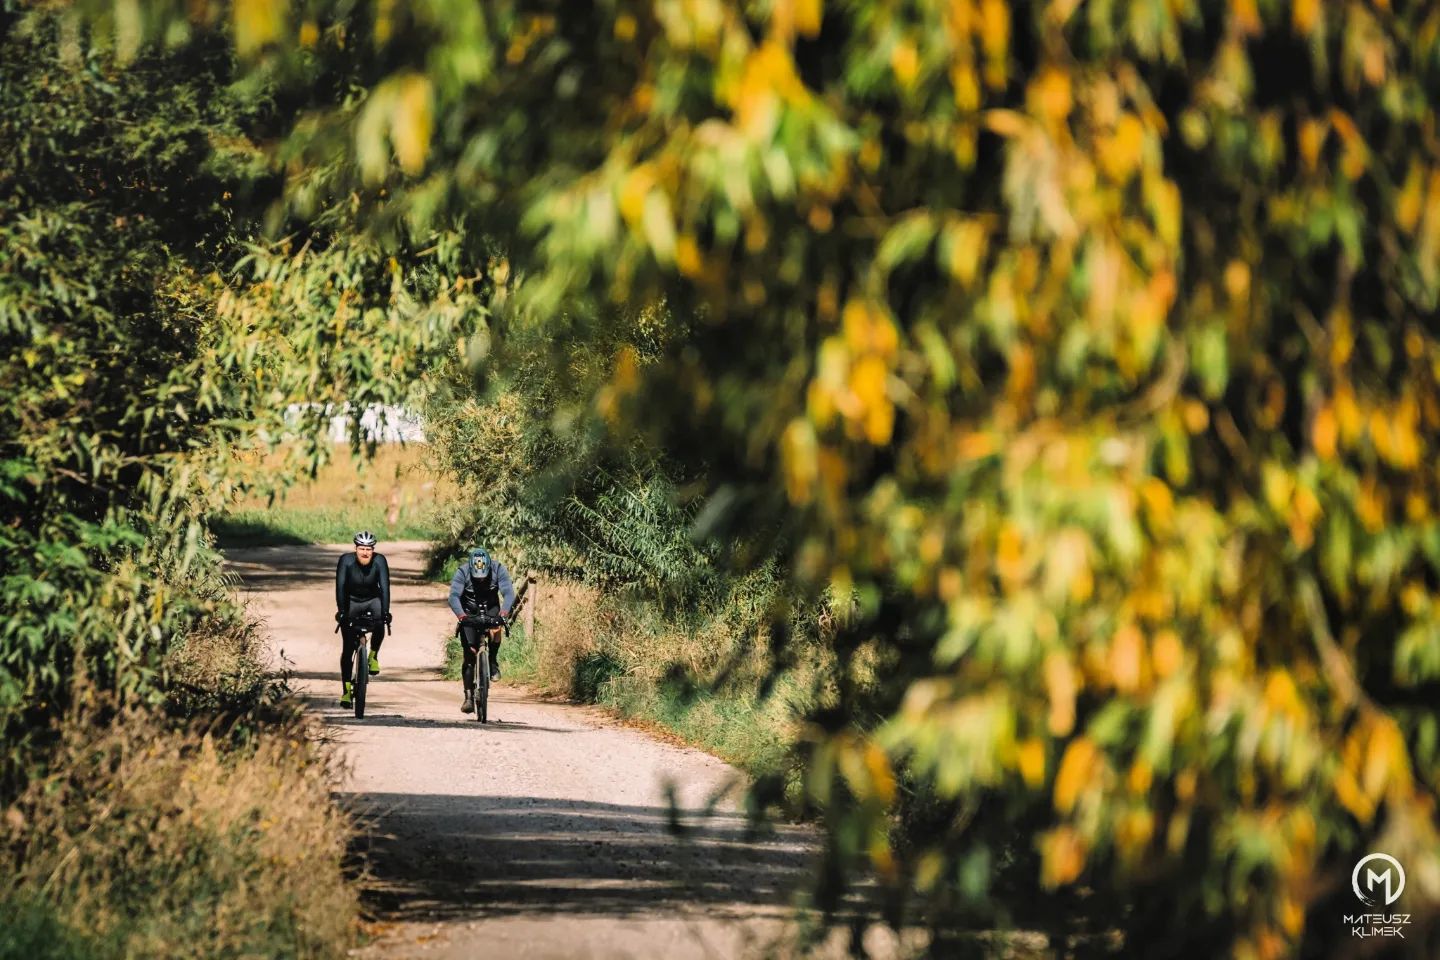 Jesień to idealna pora na wyprawy rowerowe po spokojnych już Mazurach😍
Czy wiecie, że we wrześniu przez tereny naszej gm